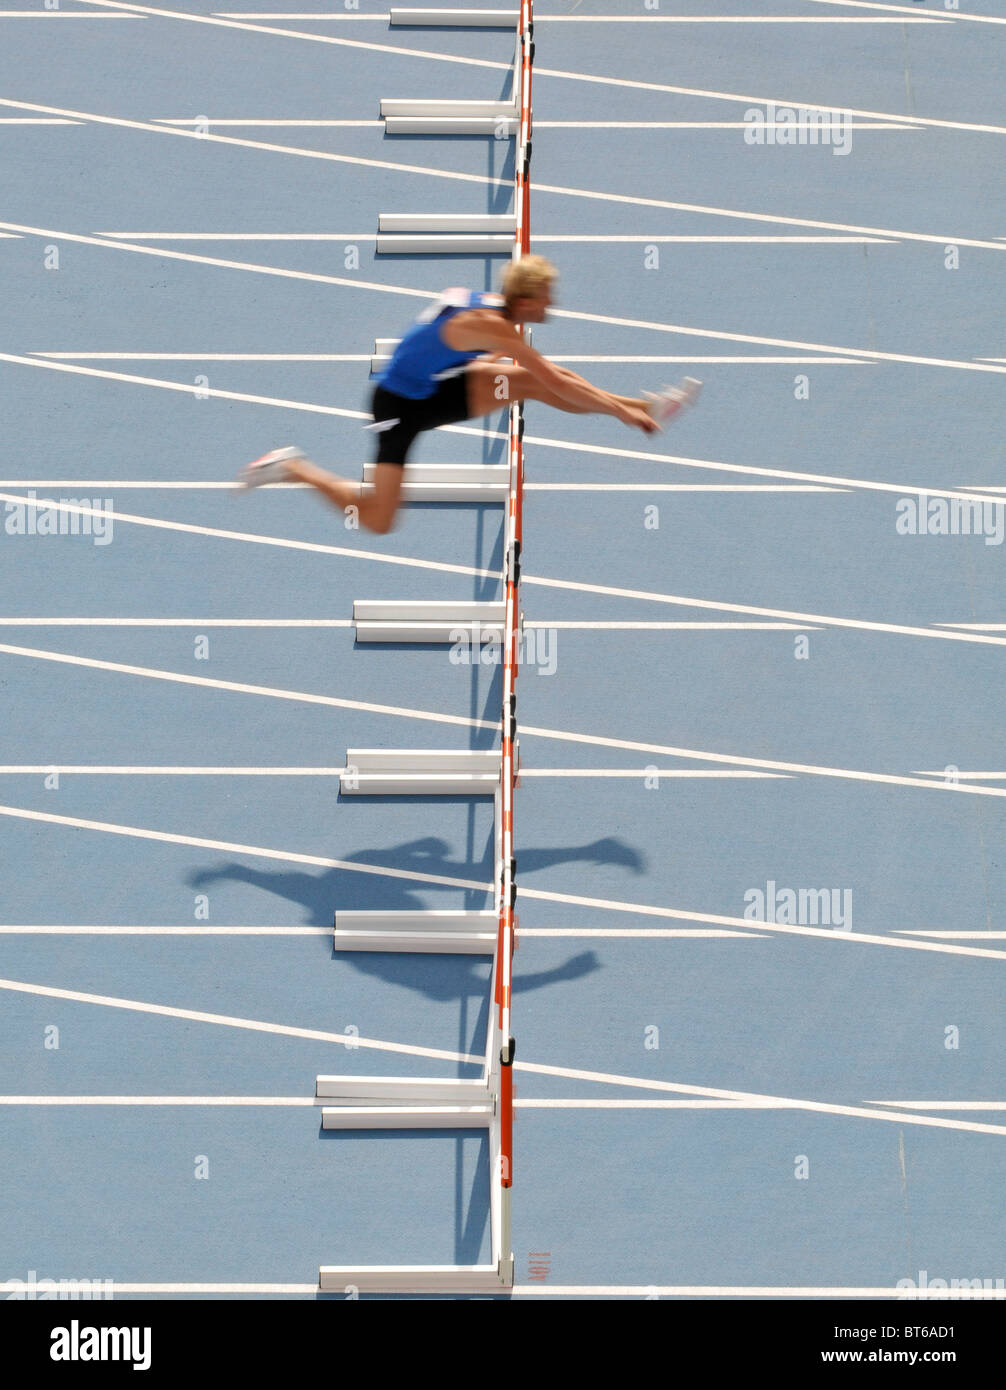 einsame männliche Sprinter überspringt Hürde beim Leichtathletik-Veranstaltung Stockfoto